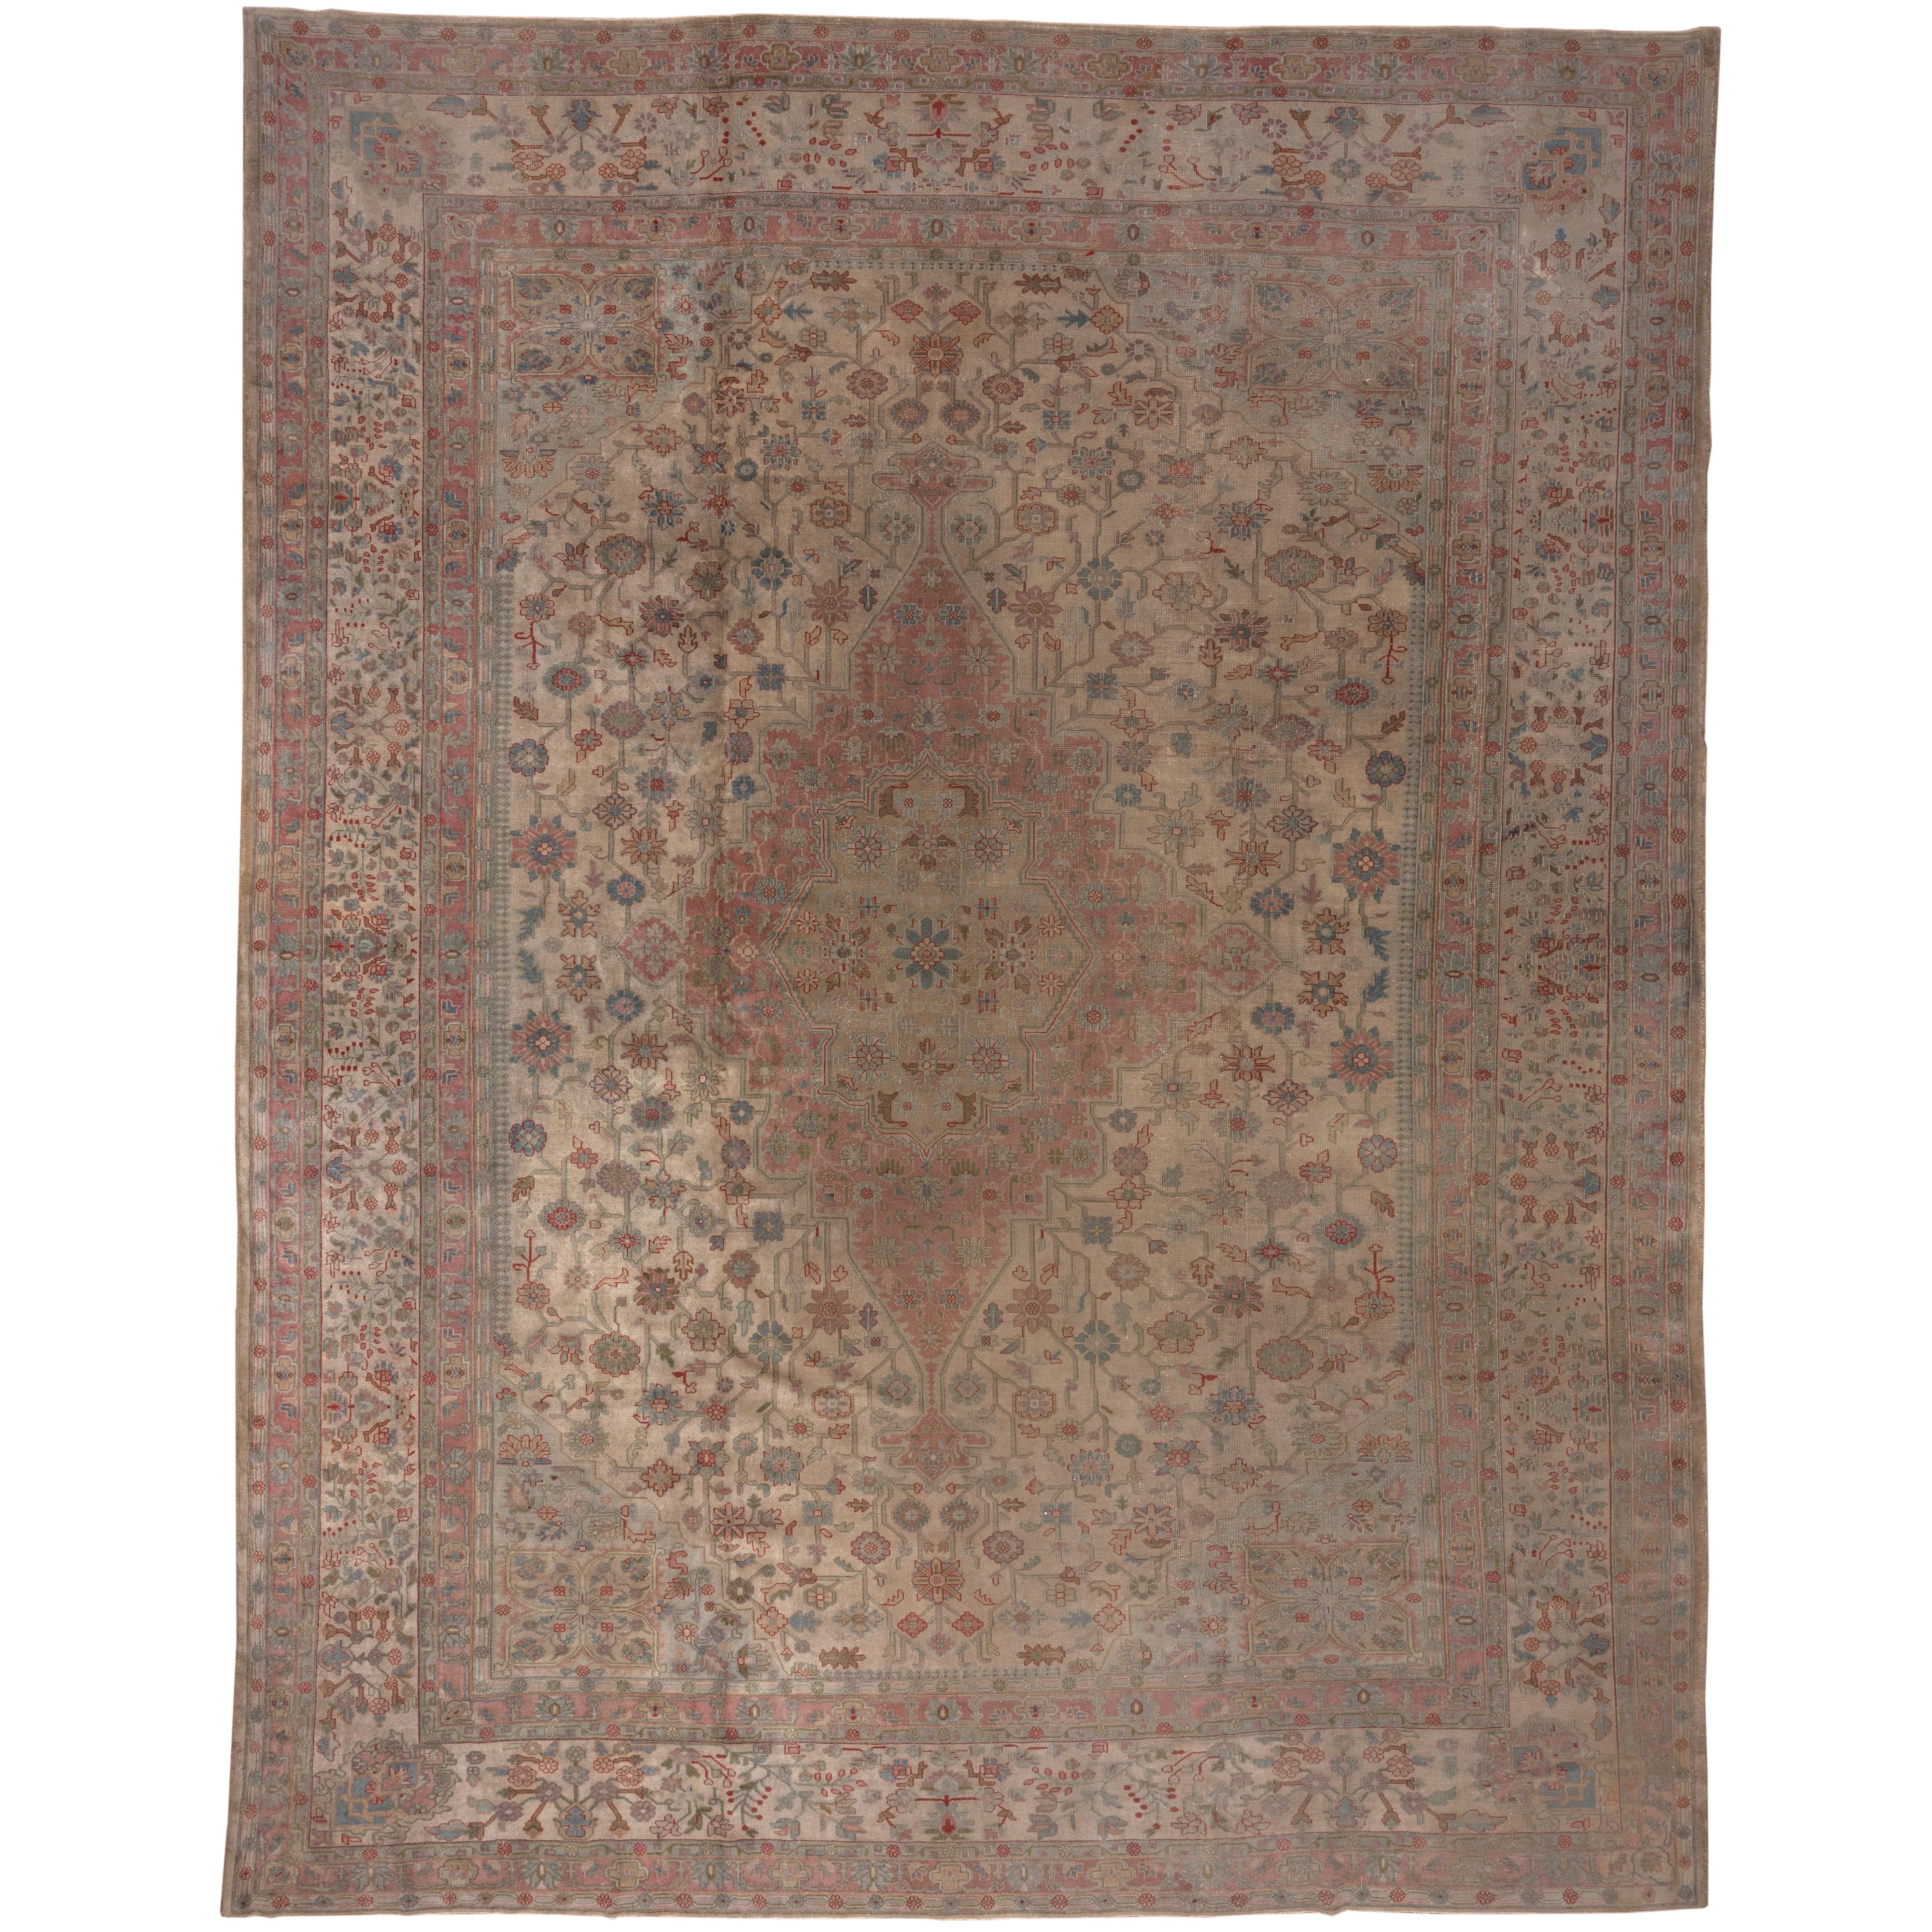 Antique Sivas Carpet For Sale